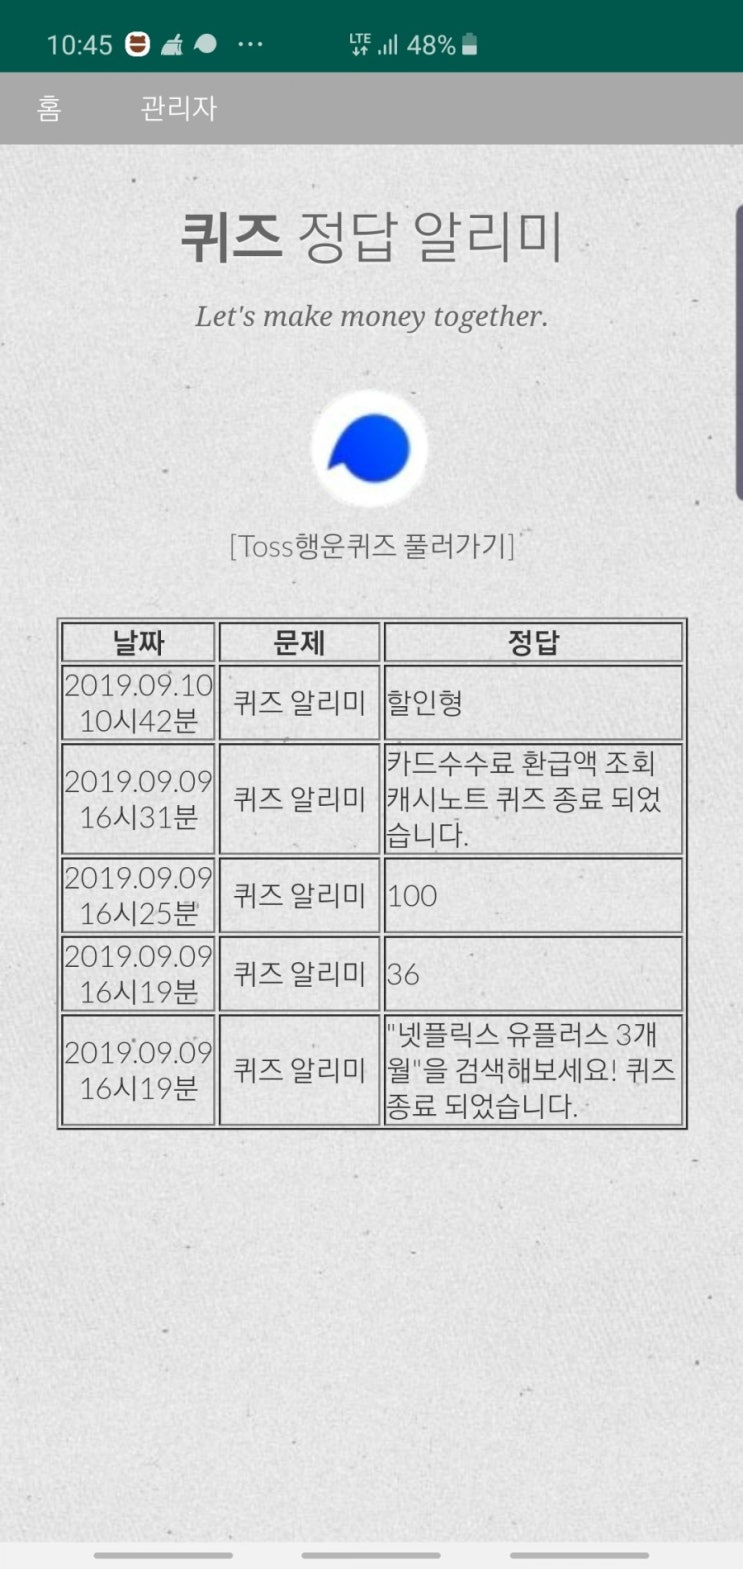 토스 × 현대카드 현금 8만원 이벤트 토스행운퀴즈 정답 공개